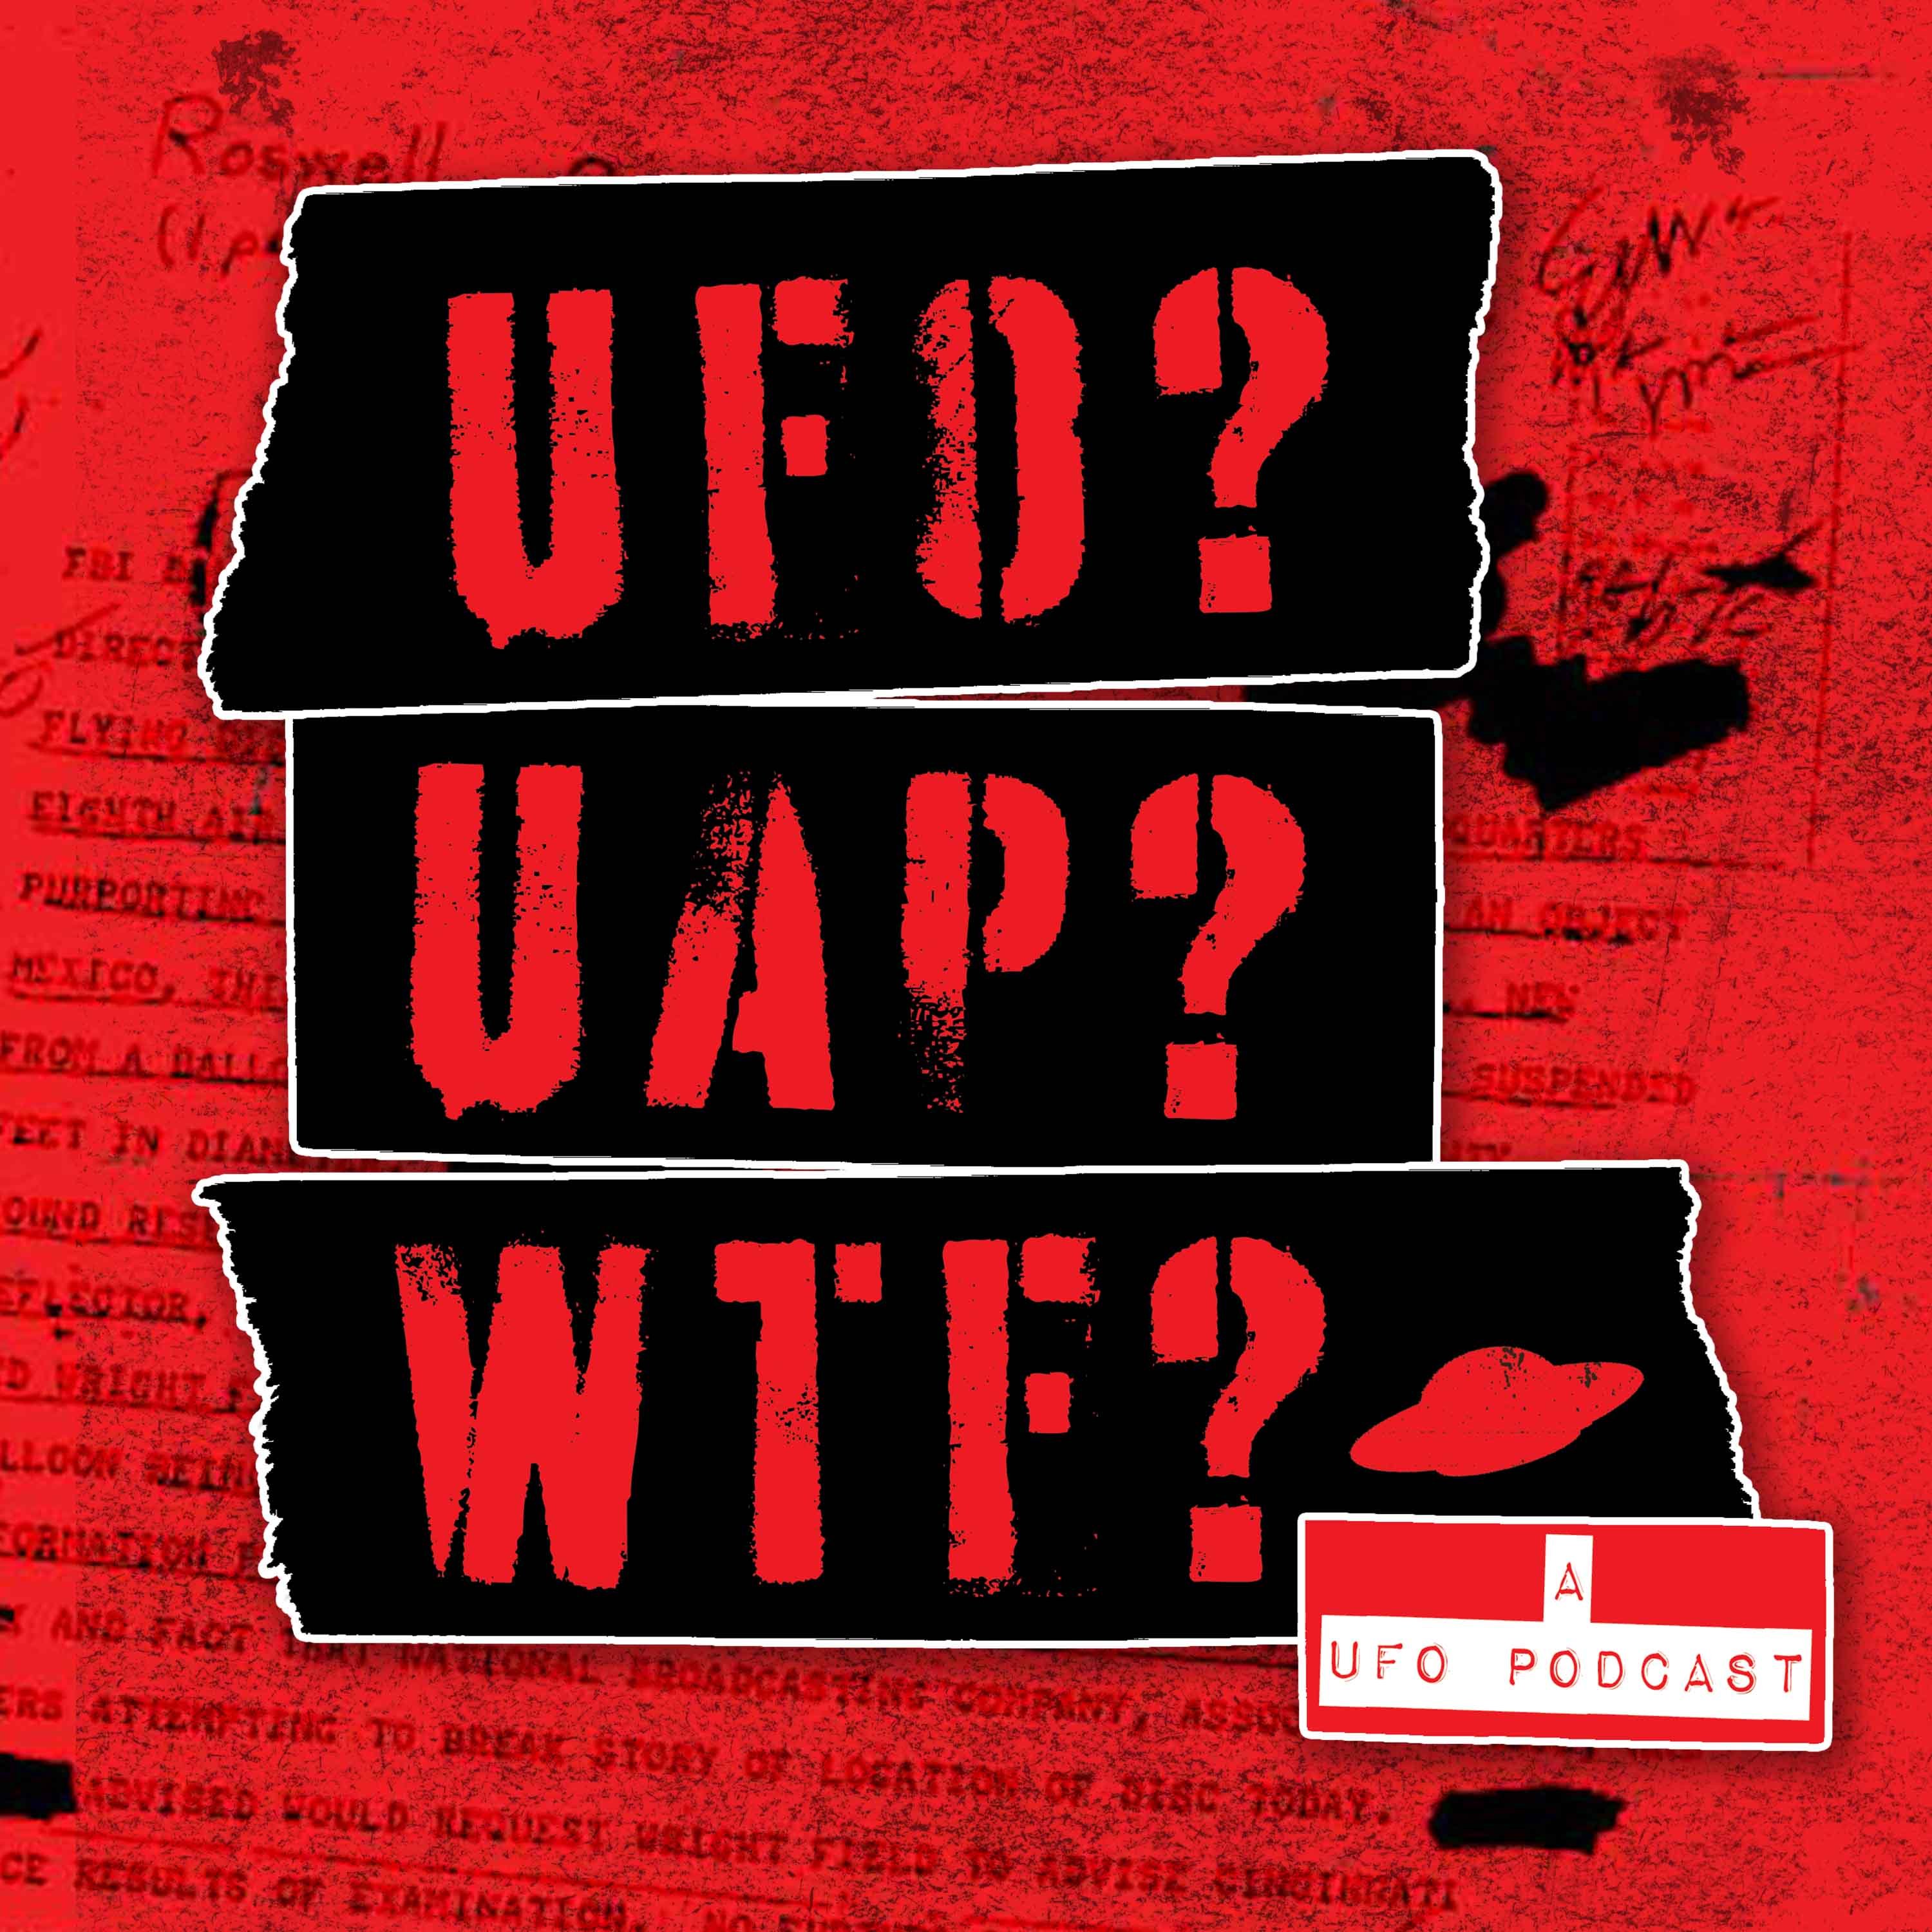 UFO? UAP? WTF? — a UFO podcast